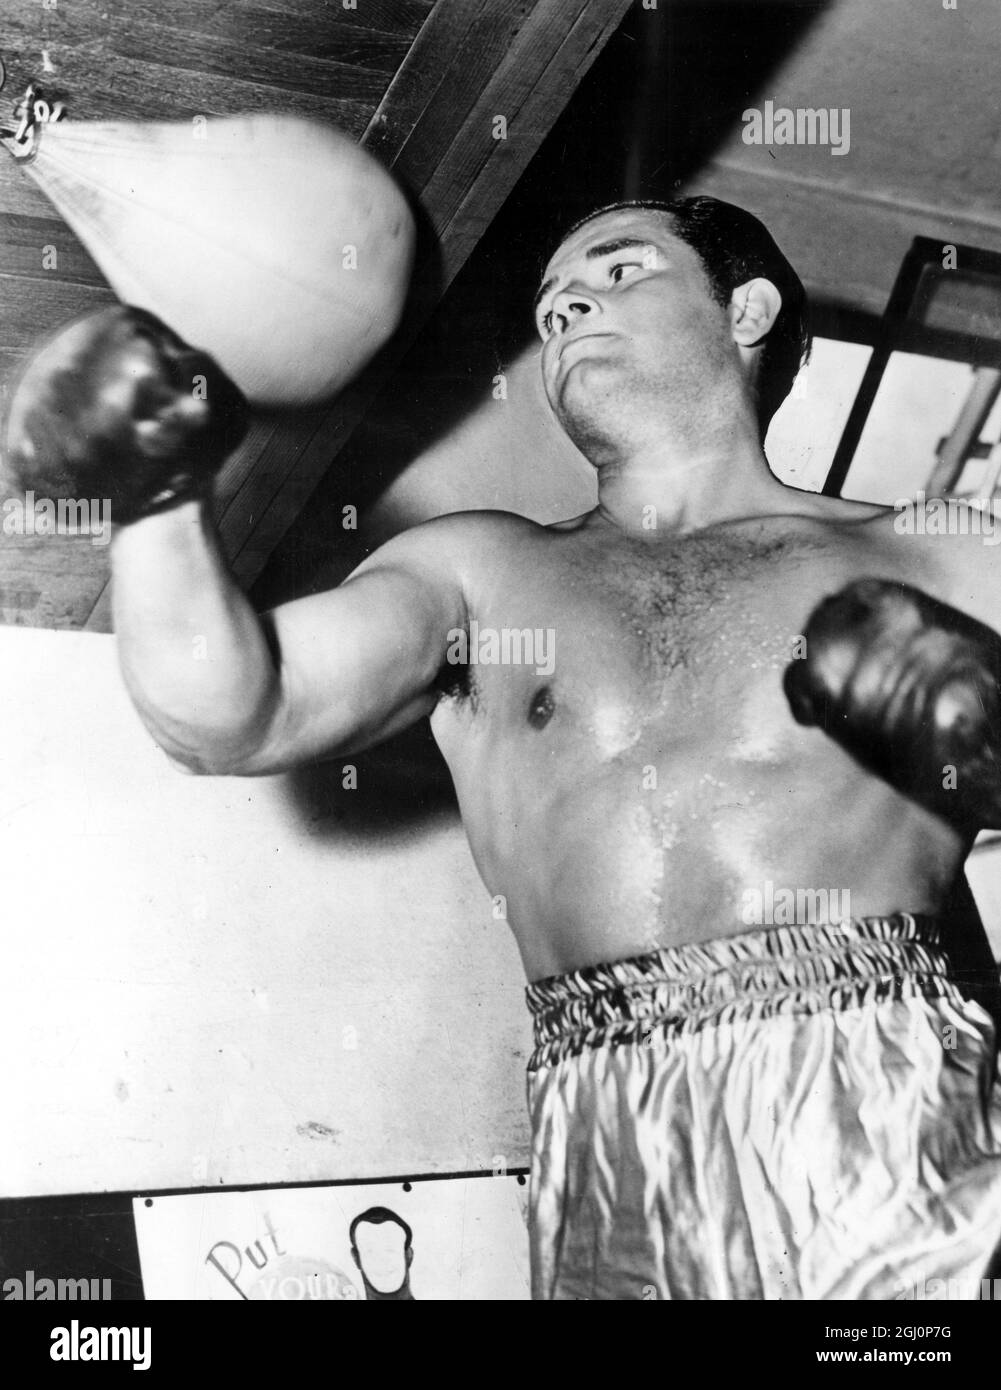 Der ehemalige Amateurboxer, der zum Schauspieler wurde, Tom Neal, wird zur Zeit seiner Ringkarriere als Trainer gezeigt. 15. September 1951 Stockfoto